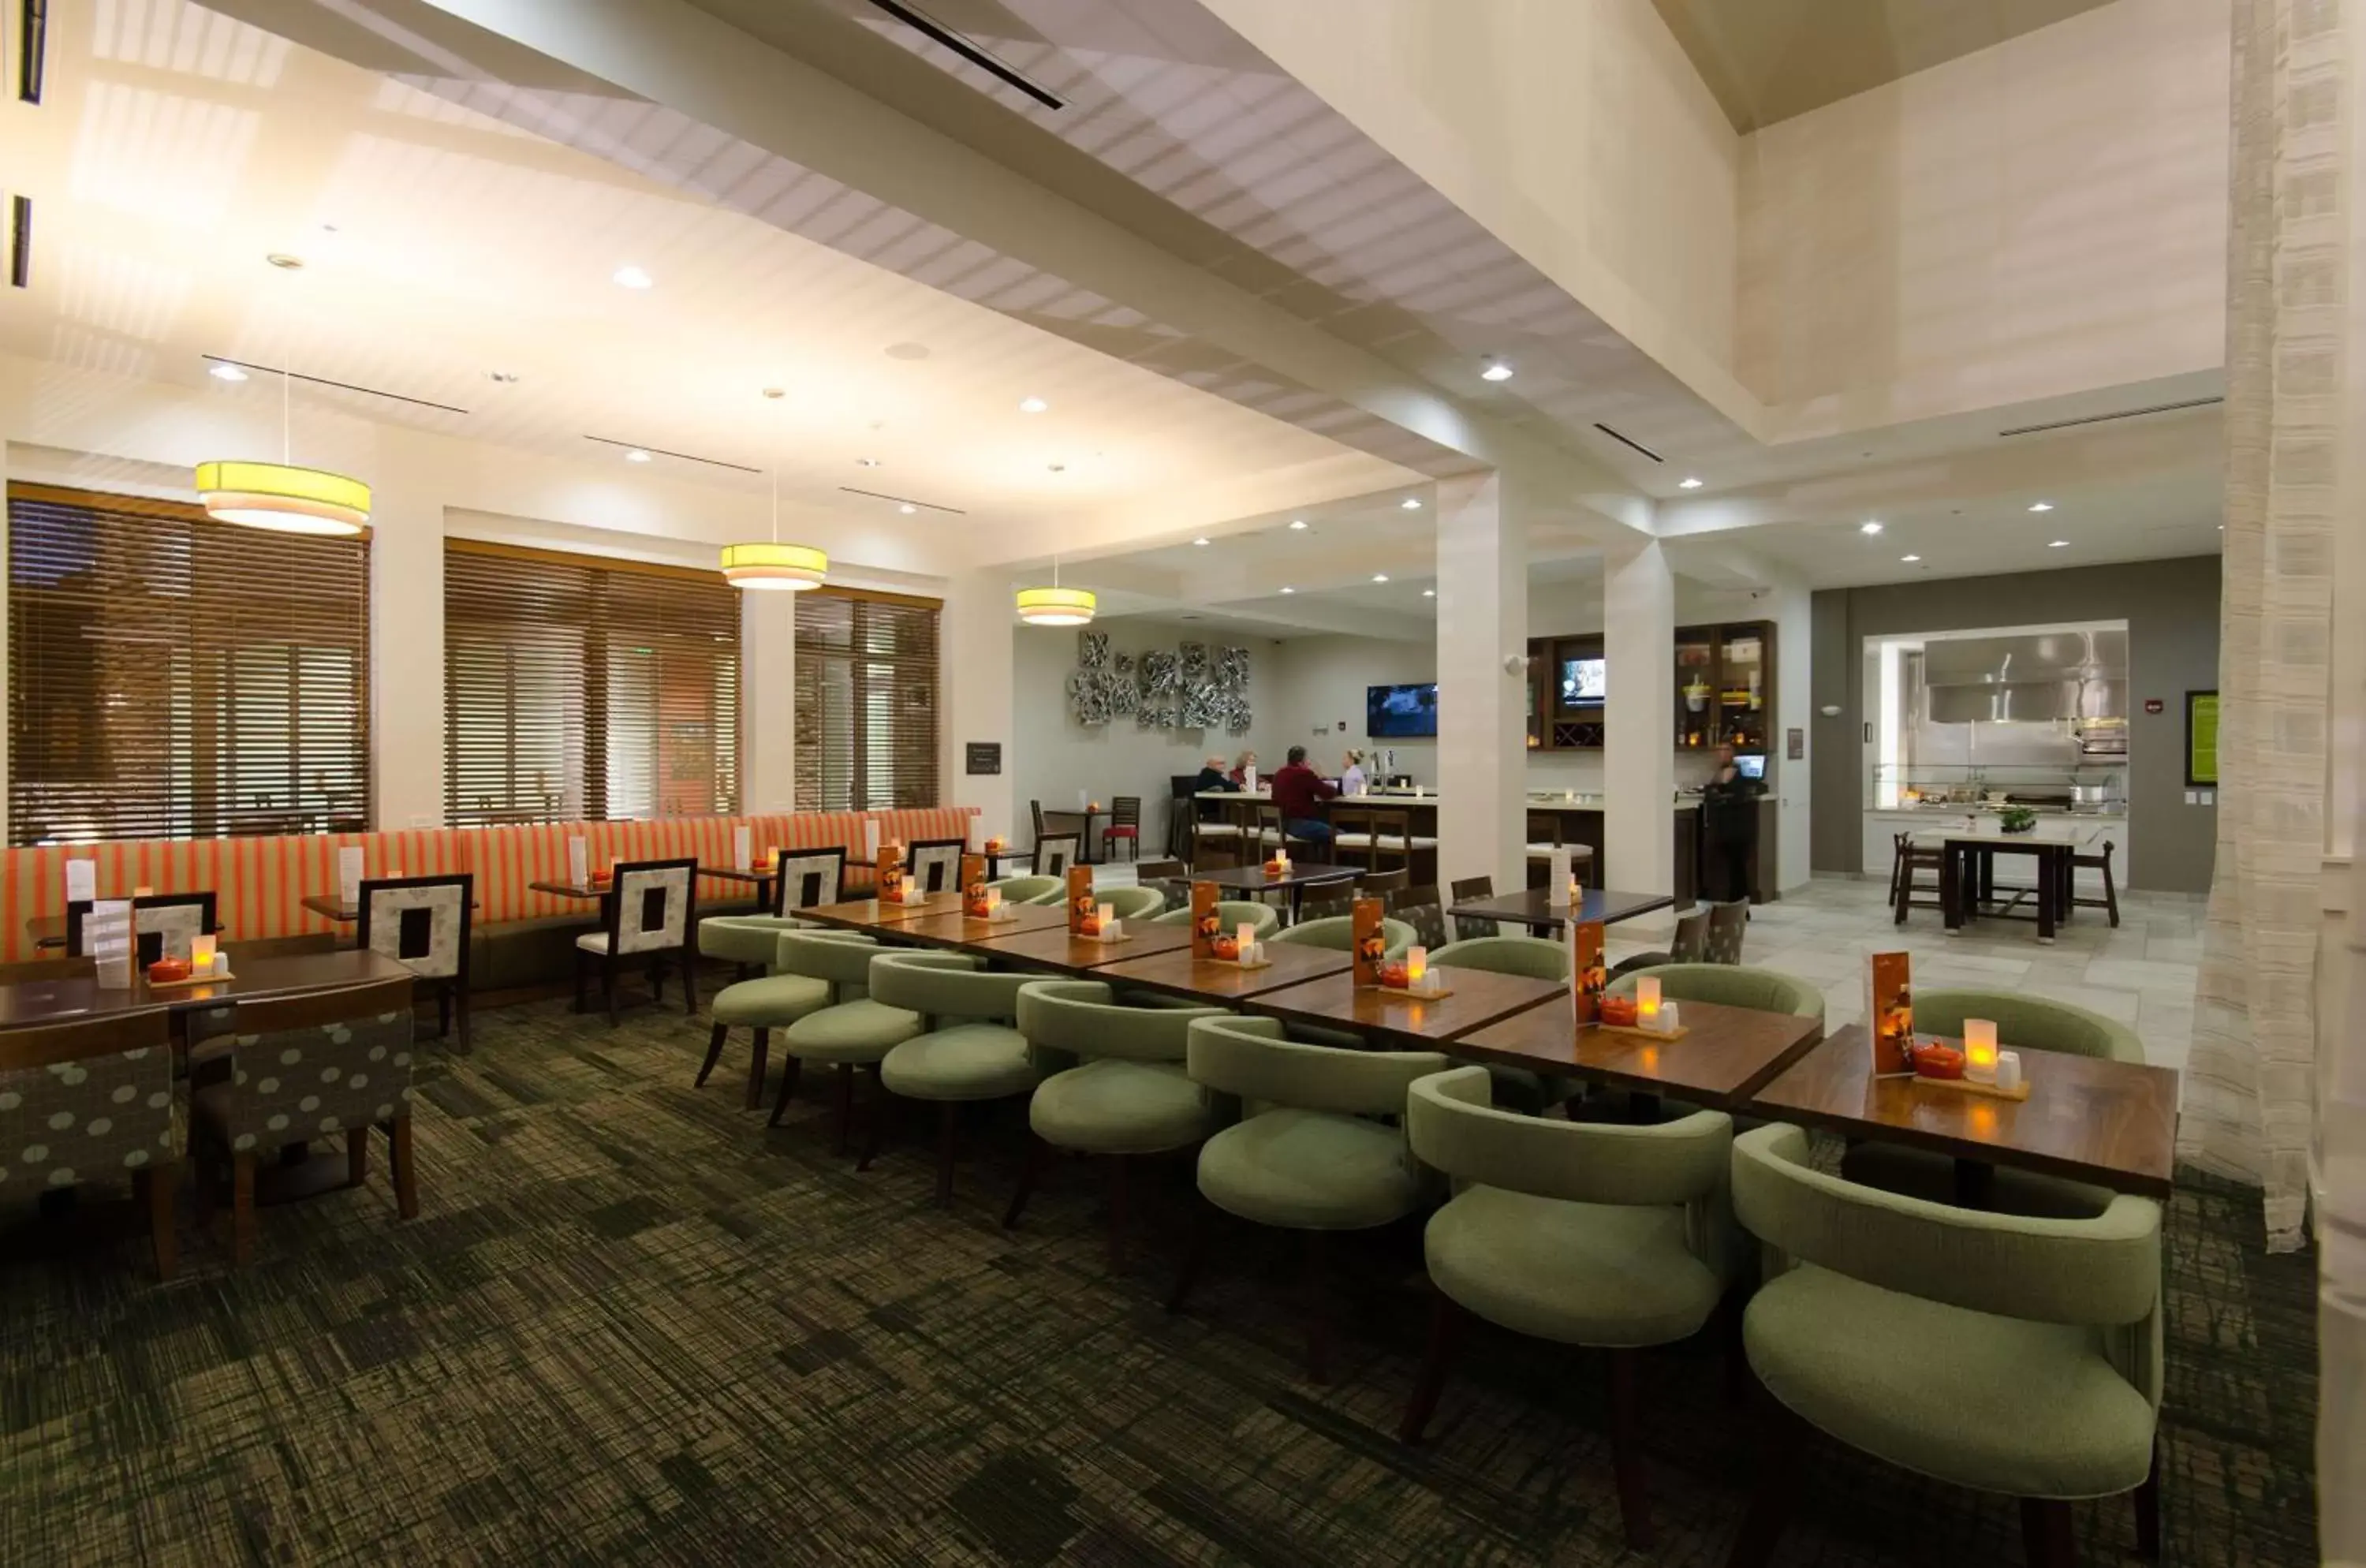 Lounge or bar, Banquet Facilities in Hilton Garden Inn Hickory